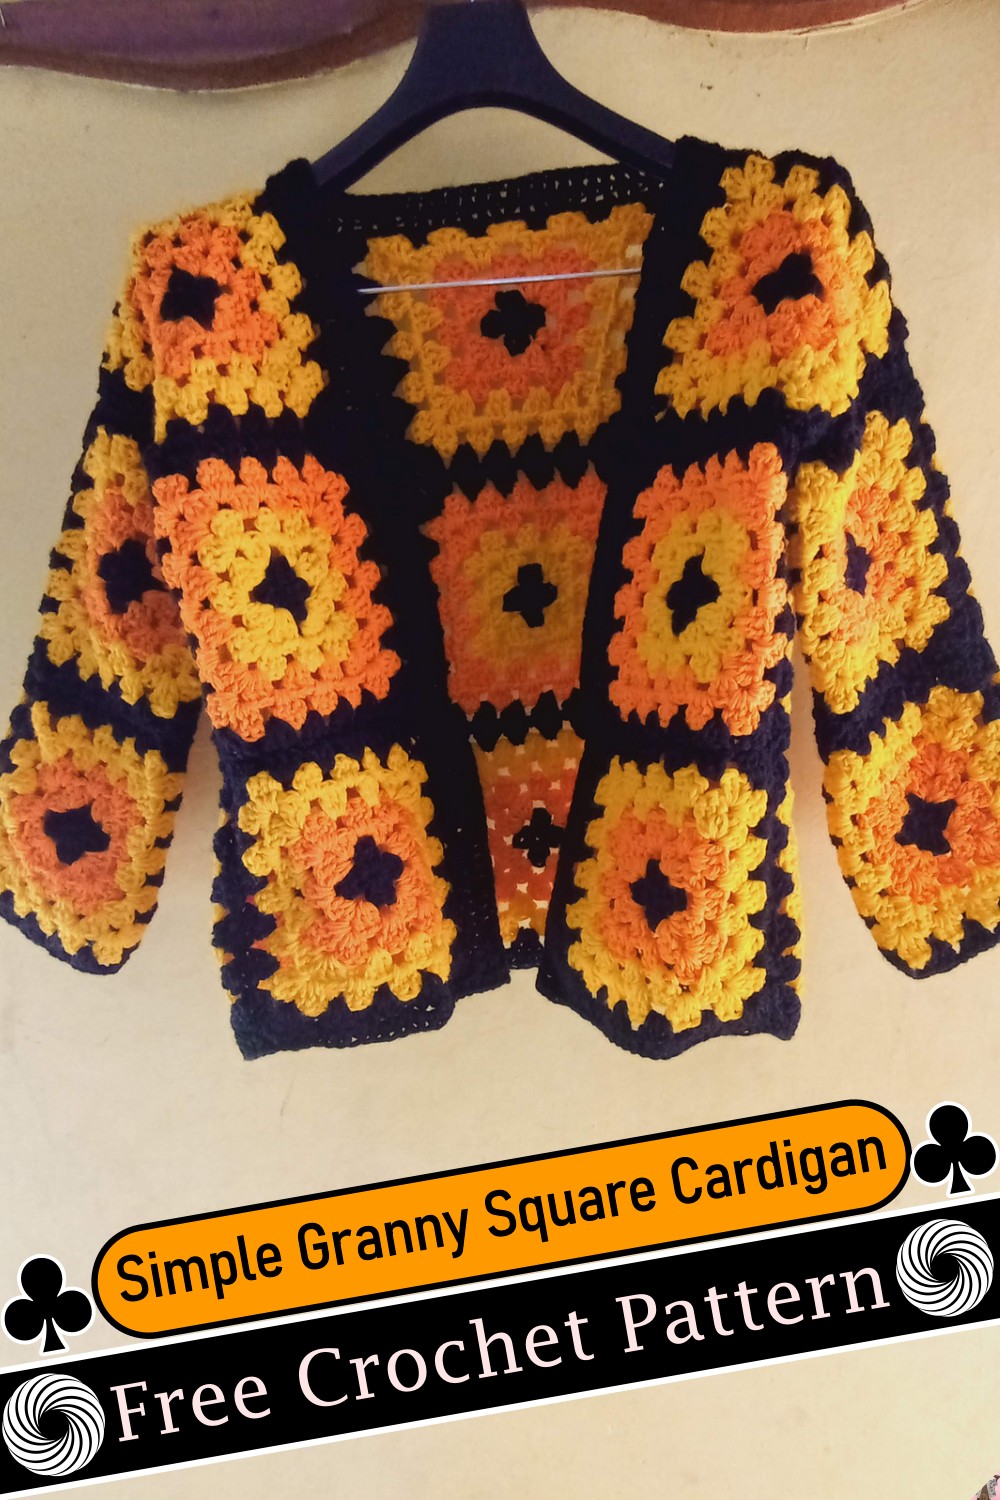 Simple Granny Square Cardigan